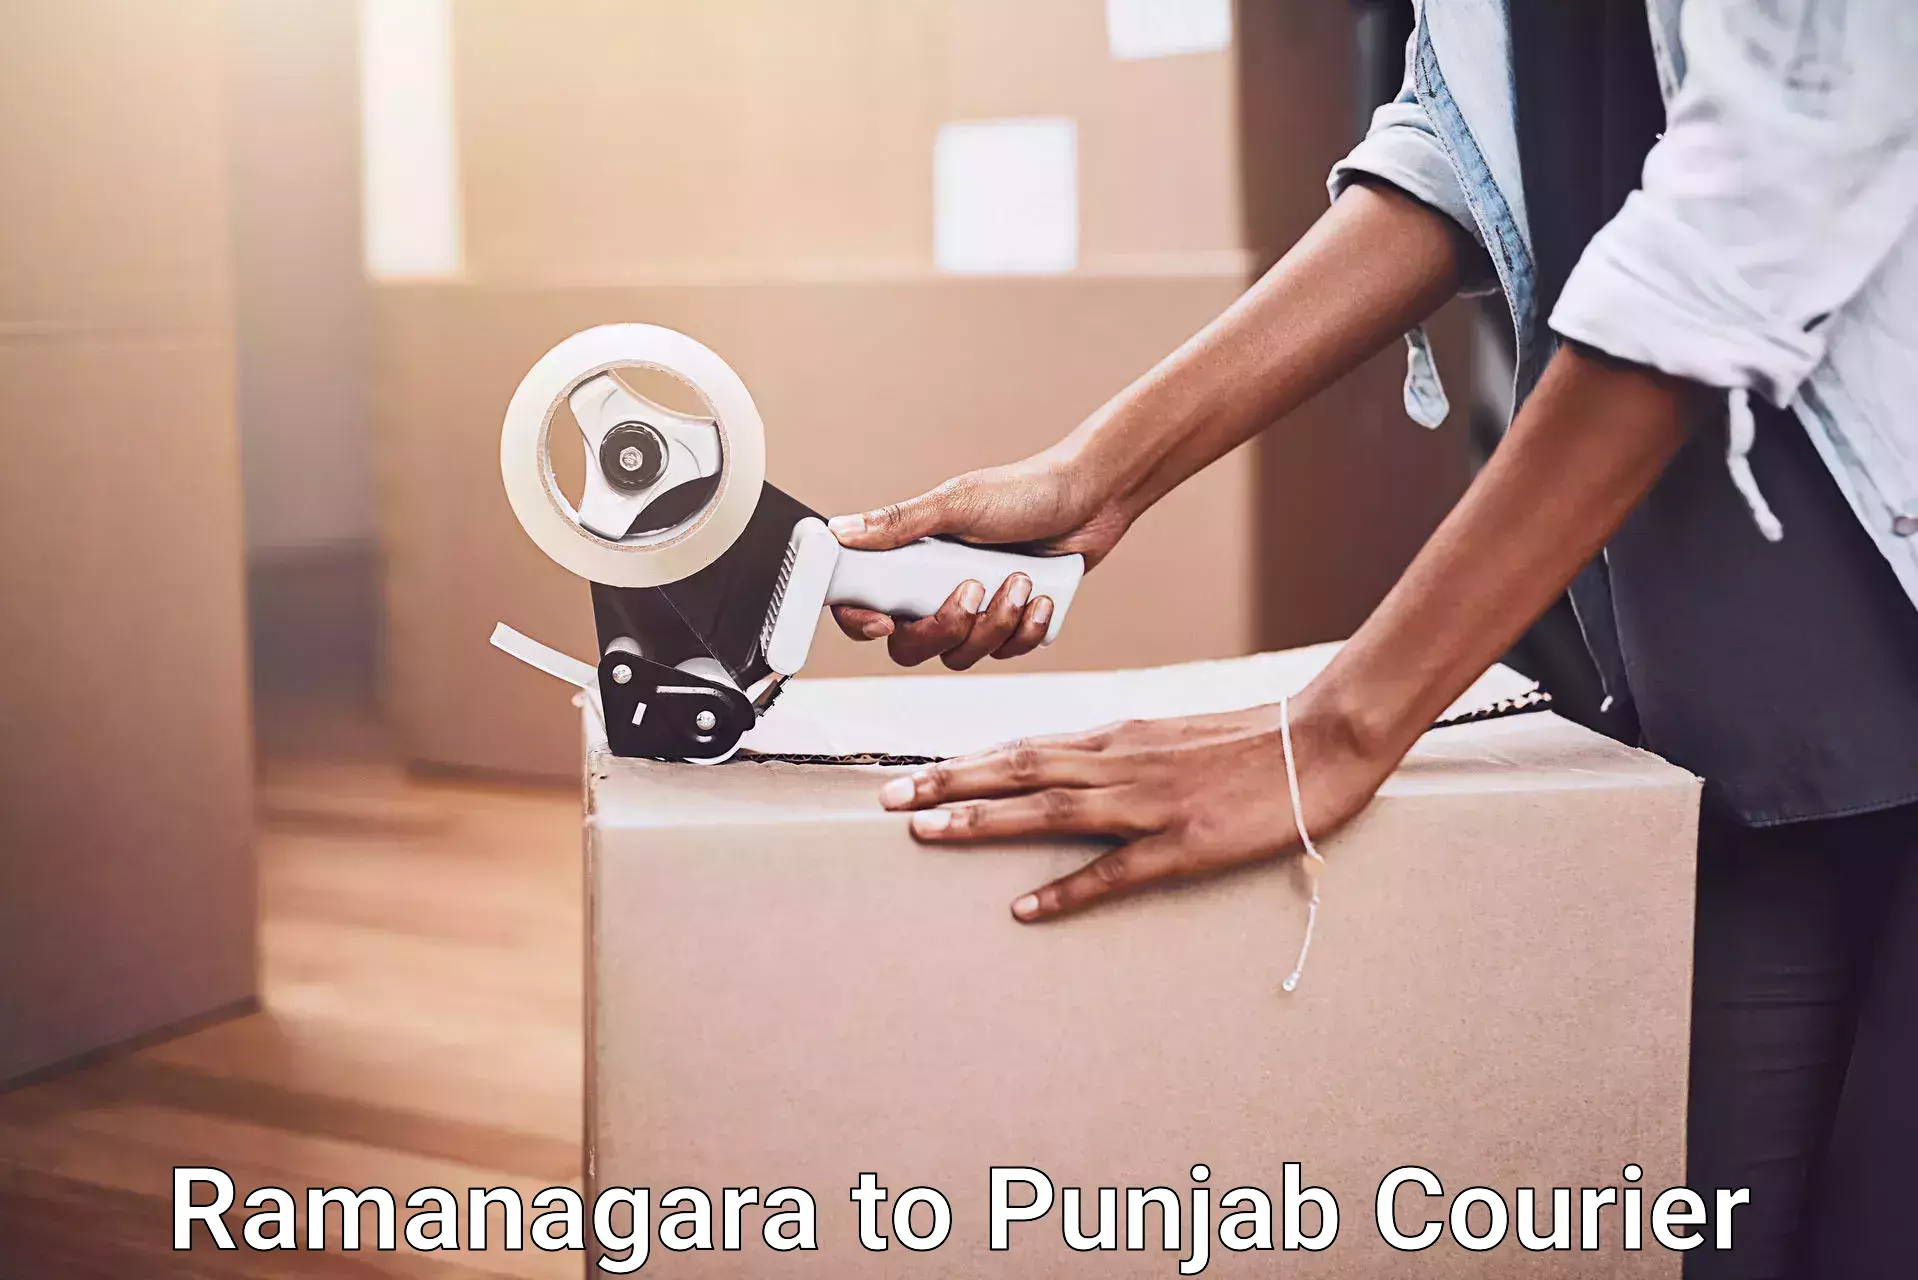 Furniture transport services Ramanagara to Punjab